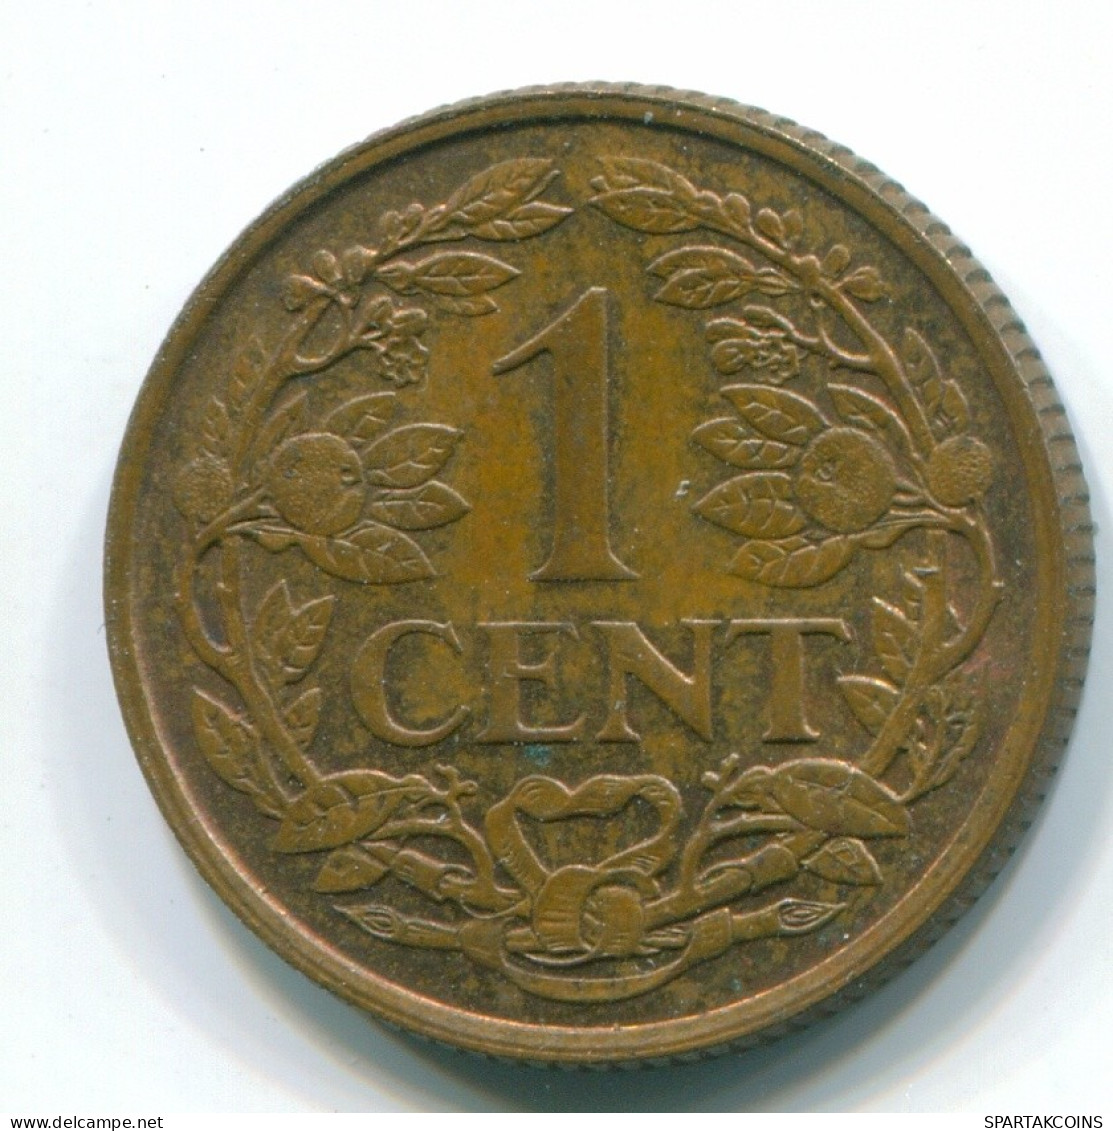 1 CENT 1961 NIEDERLÄNDISCHE ANTILLEN Bronze Fish Koloniale Münze #S11057.D.A - Niederländische Antillen